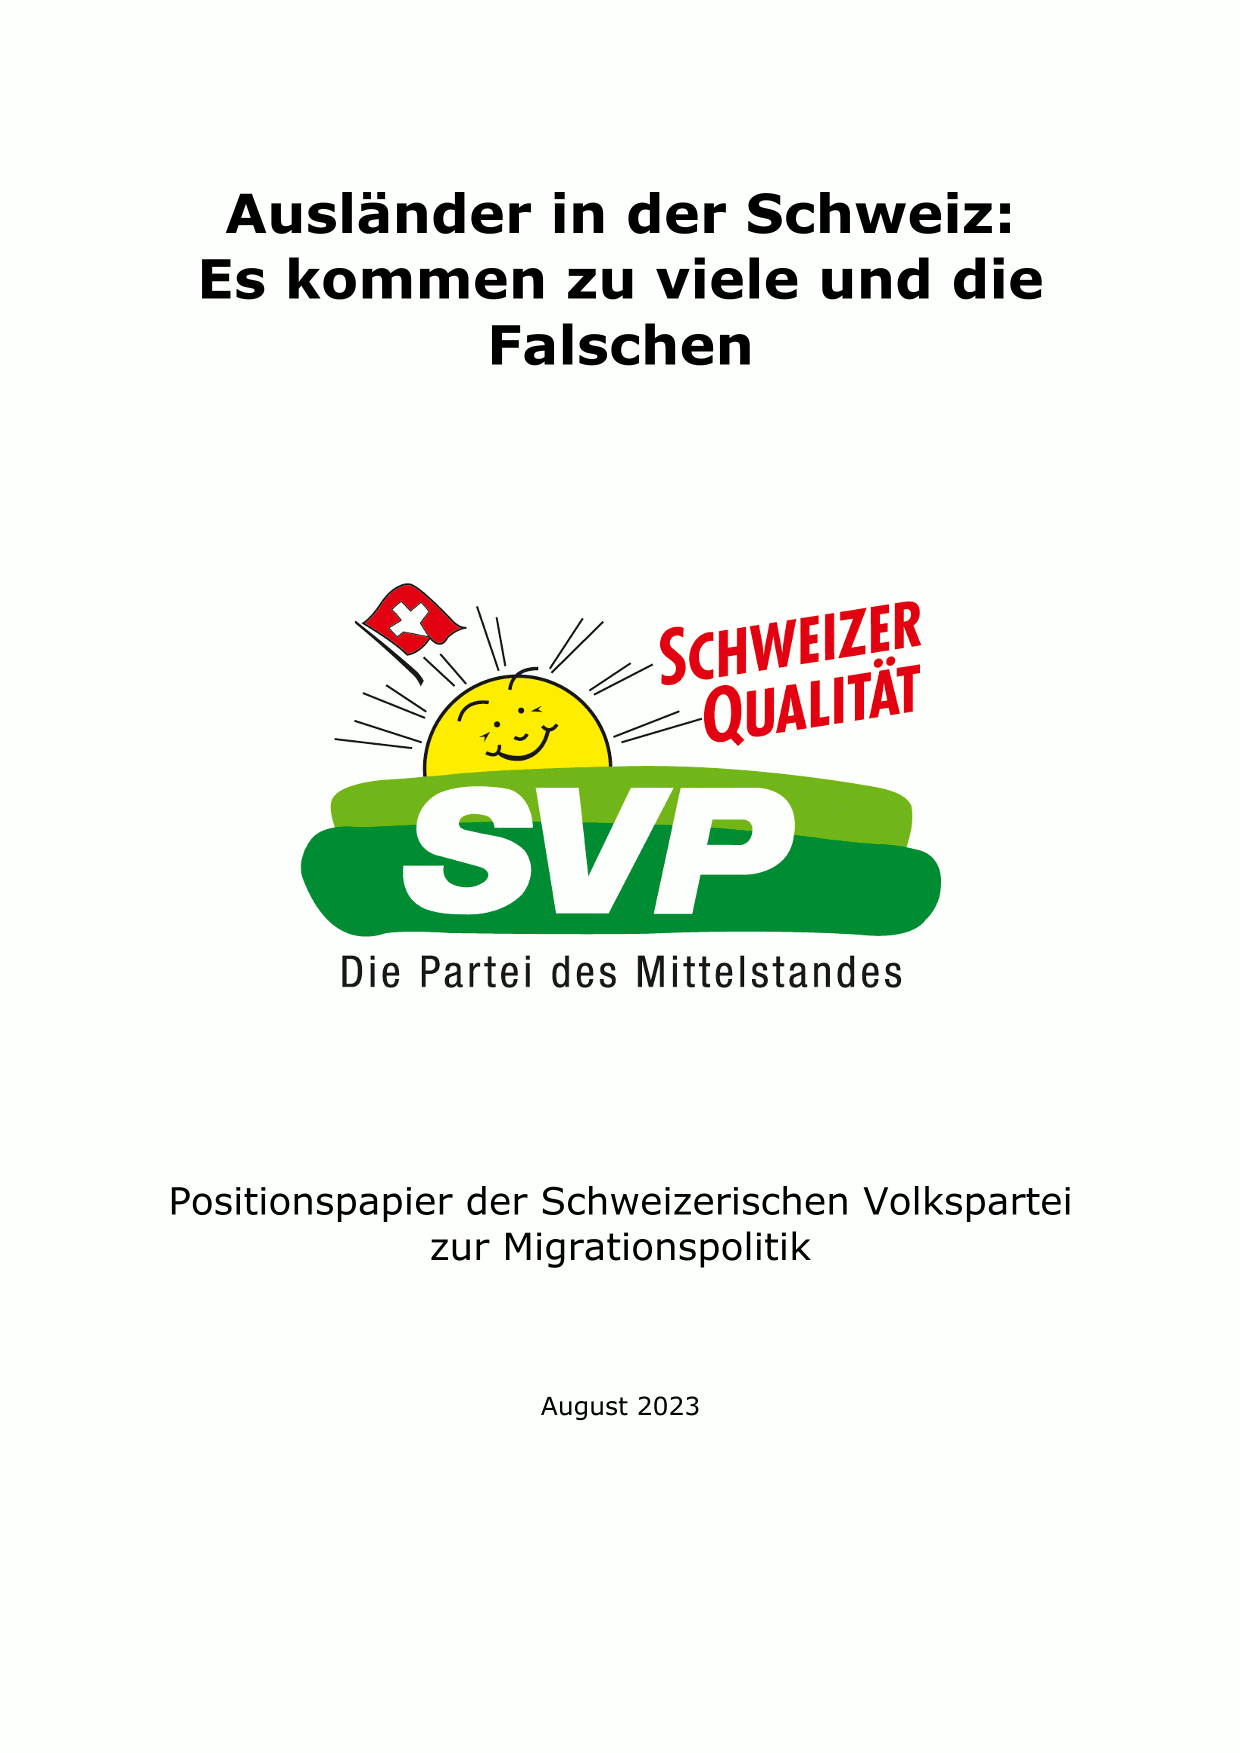 svp-positionspapier-auslaender-in-der-schweiz